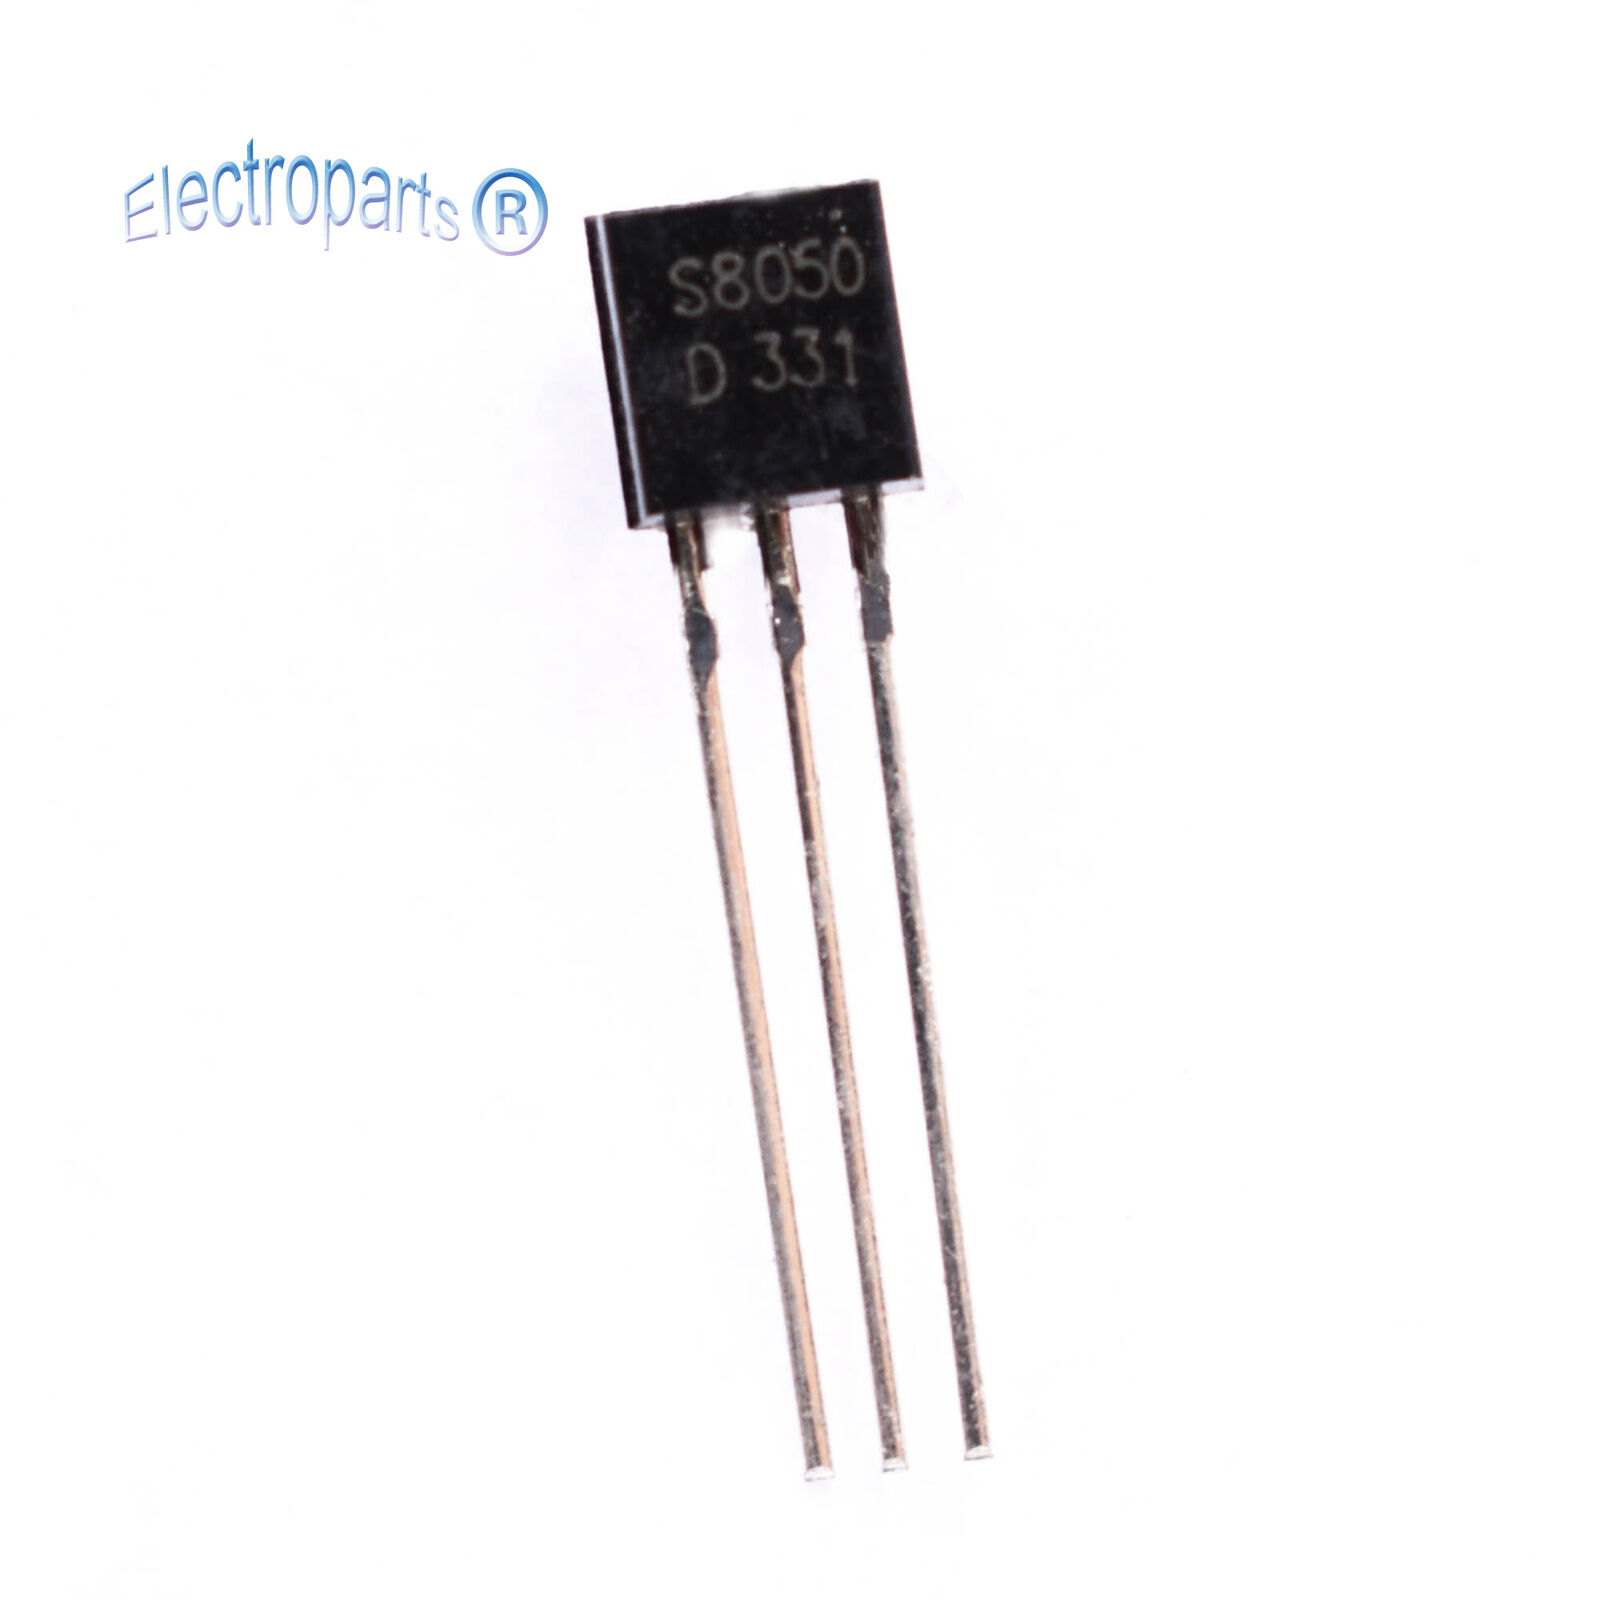 Transistor S8050 S8550 J201 2SC1815 2SC945 2SA733 S9012 S9014 KSP10 TO-92